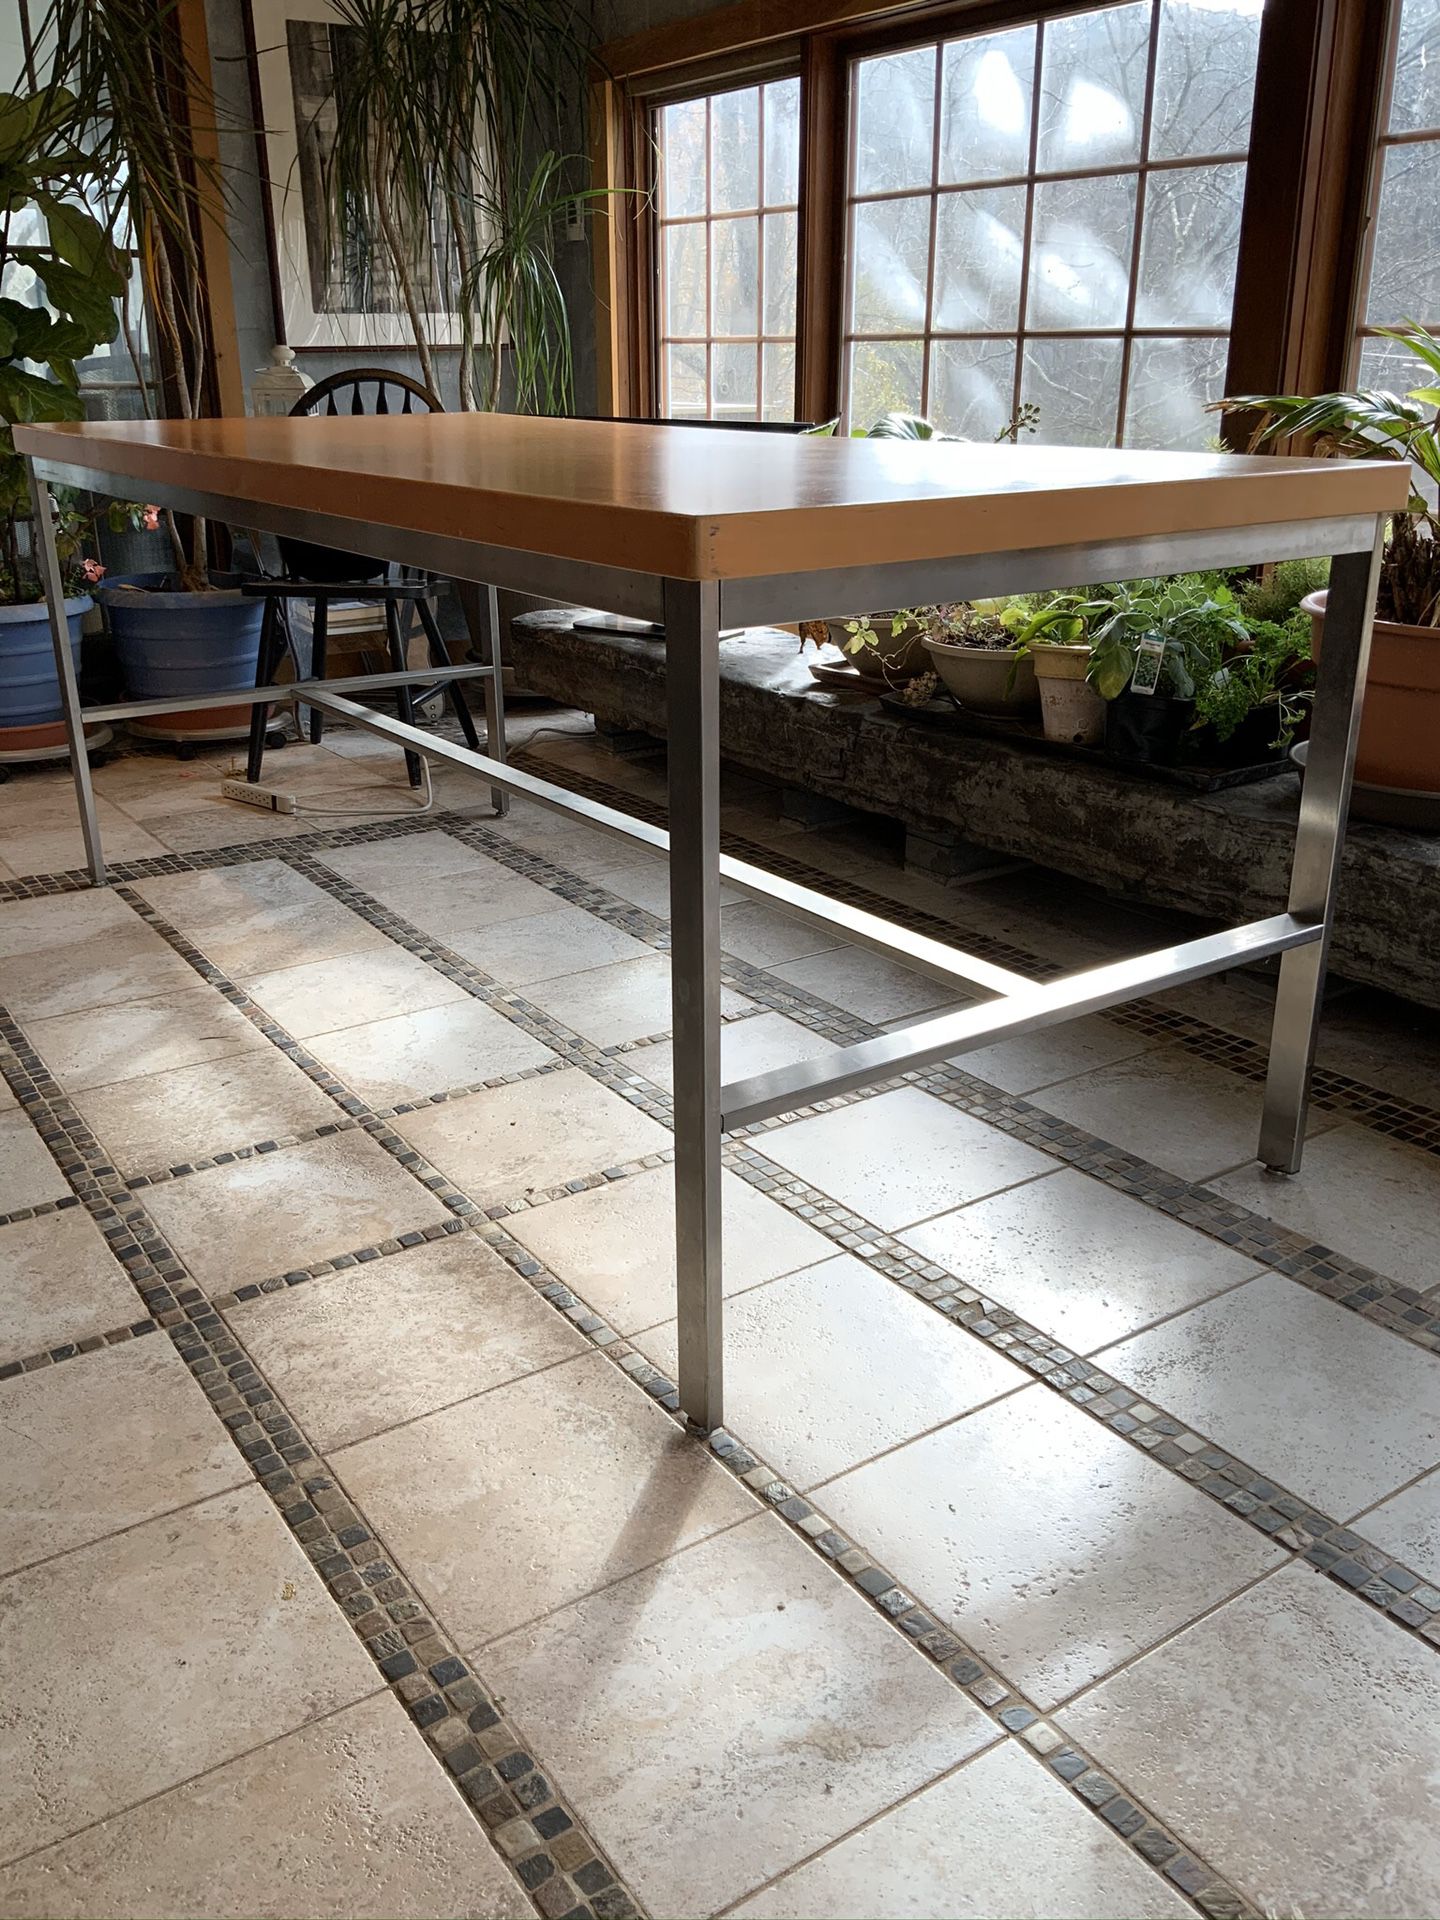 Work table on metal steel frame